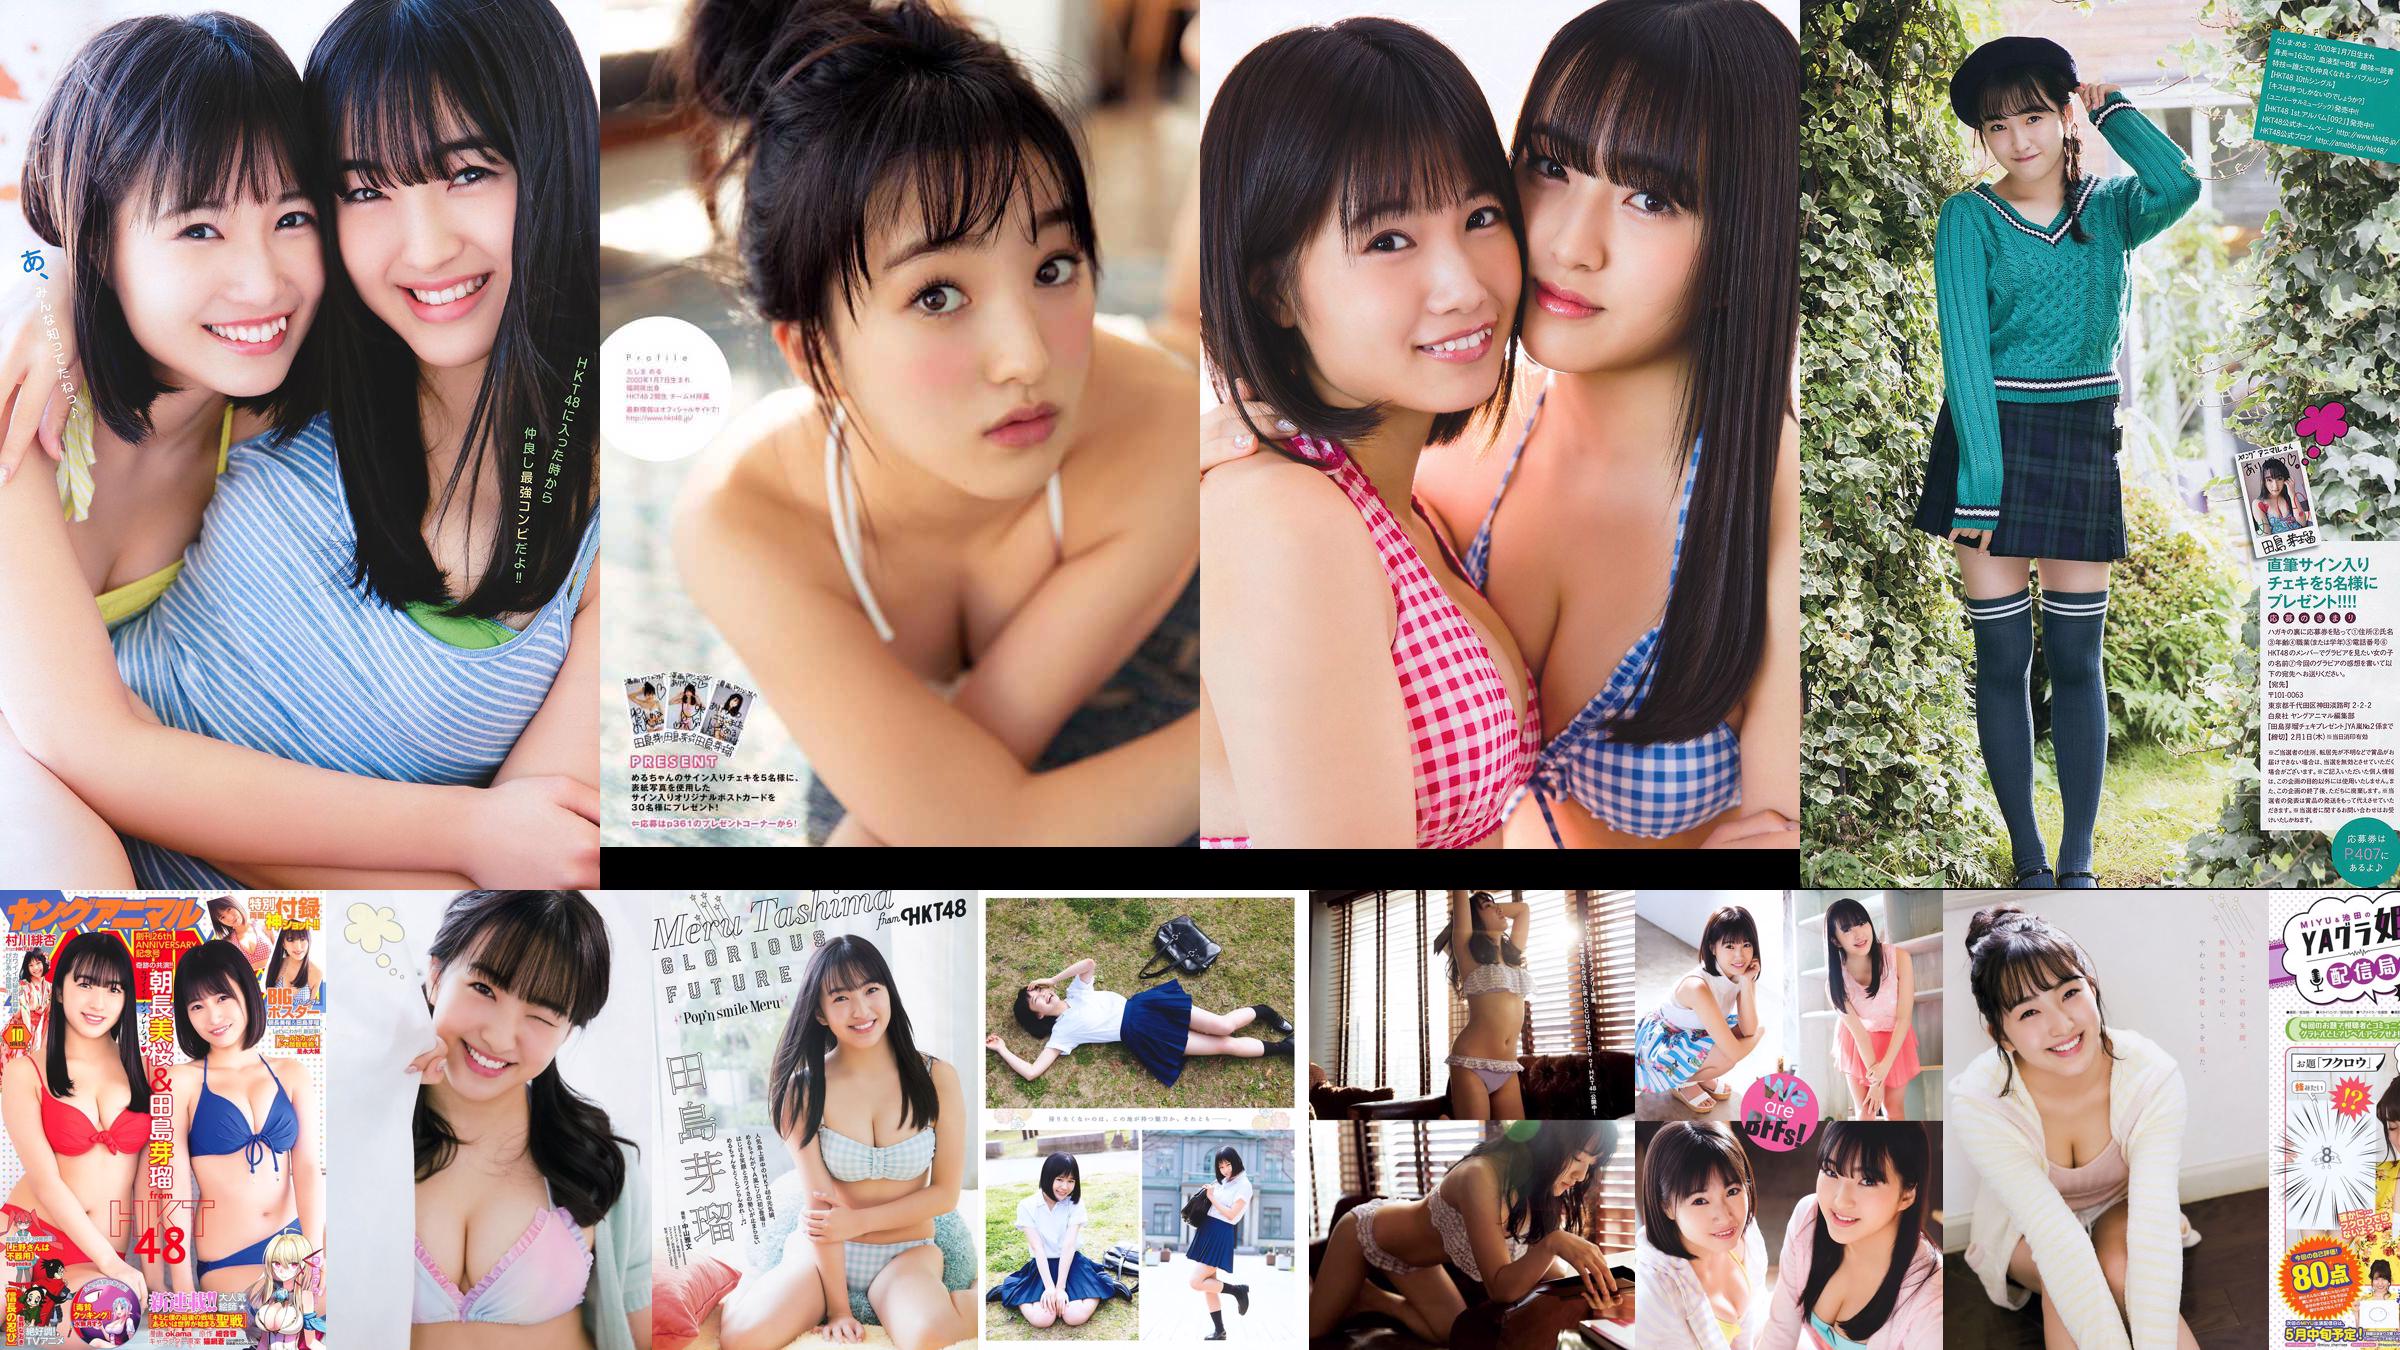 Tajima Yaru, Asaka Nagami Sakura, Muragawa Hikari [Young Animal] 2018 No.10 Photo Magazine No.1f178e Seite 1